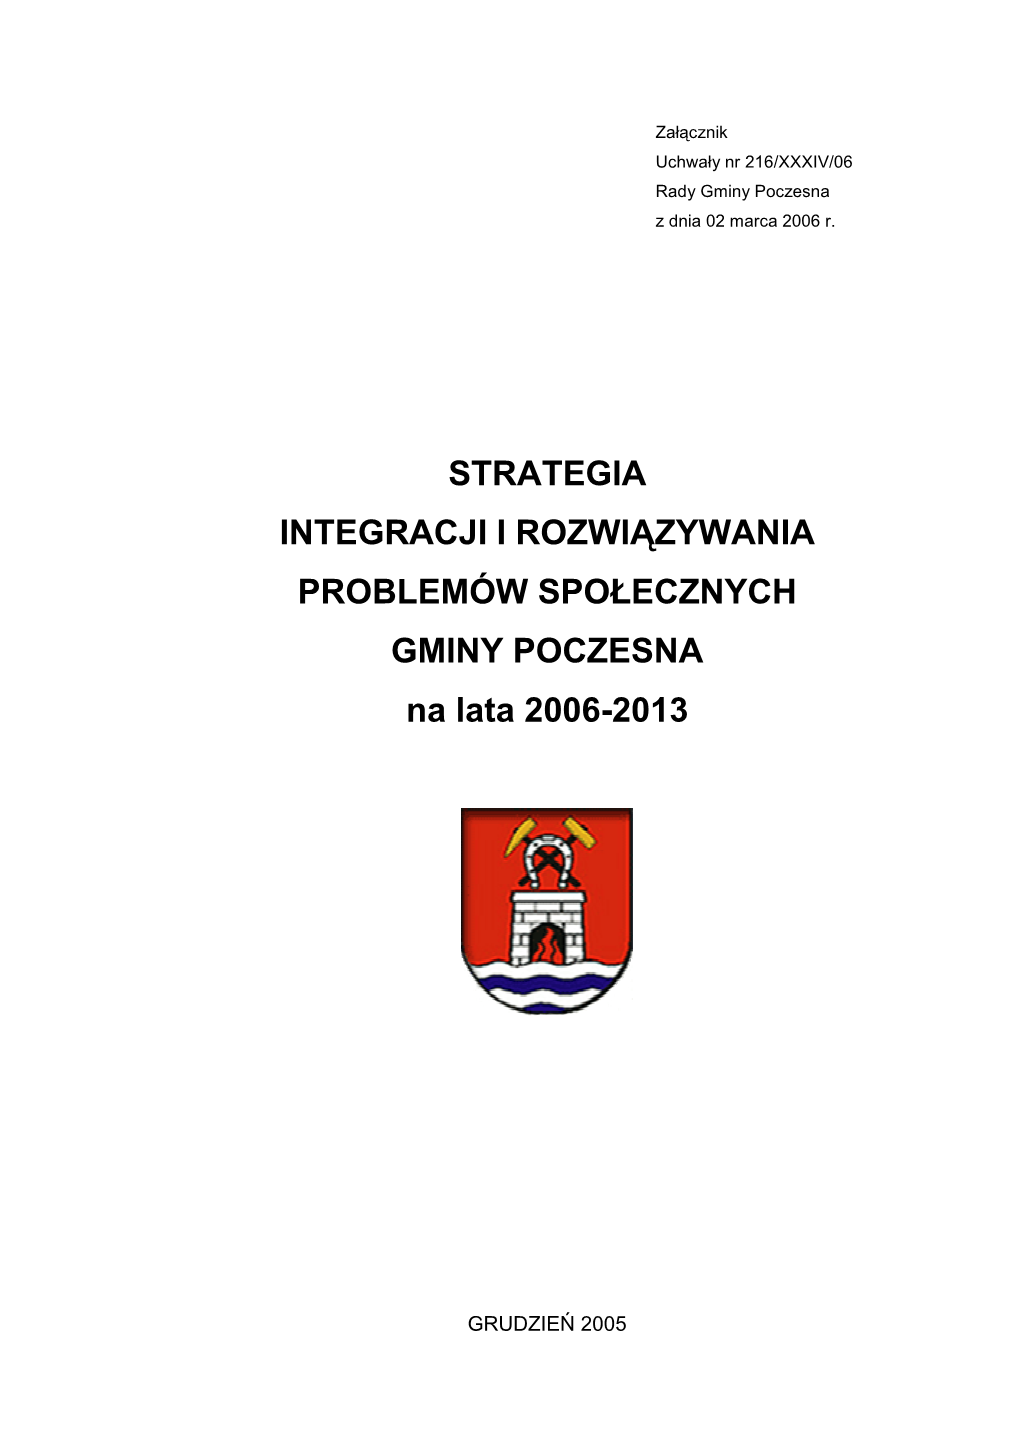 Strategia Integracji I Rozwiązywania Problemów